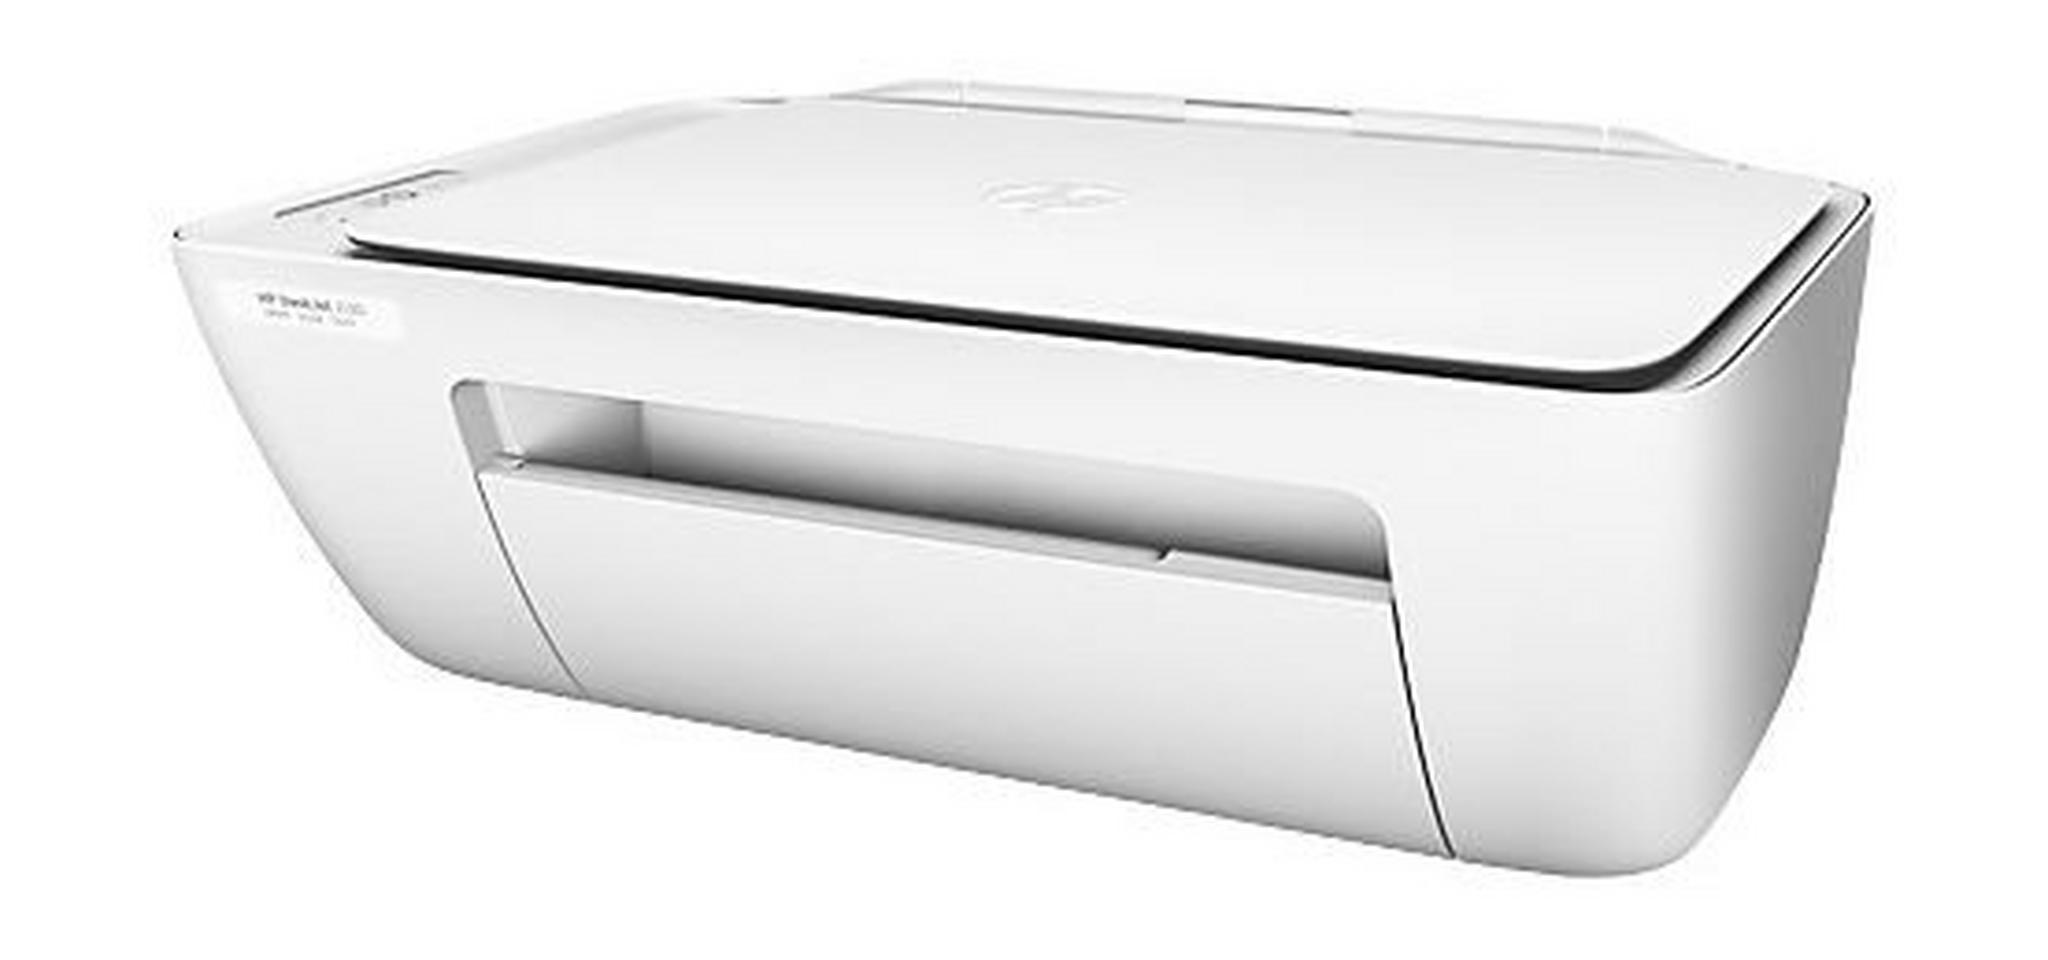 HP DeskJet 2130 All In One Printer (K7N77C) - White